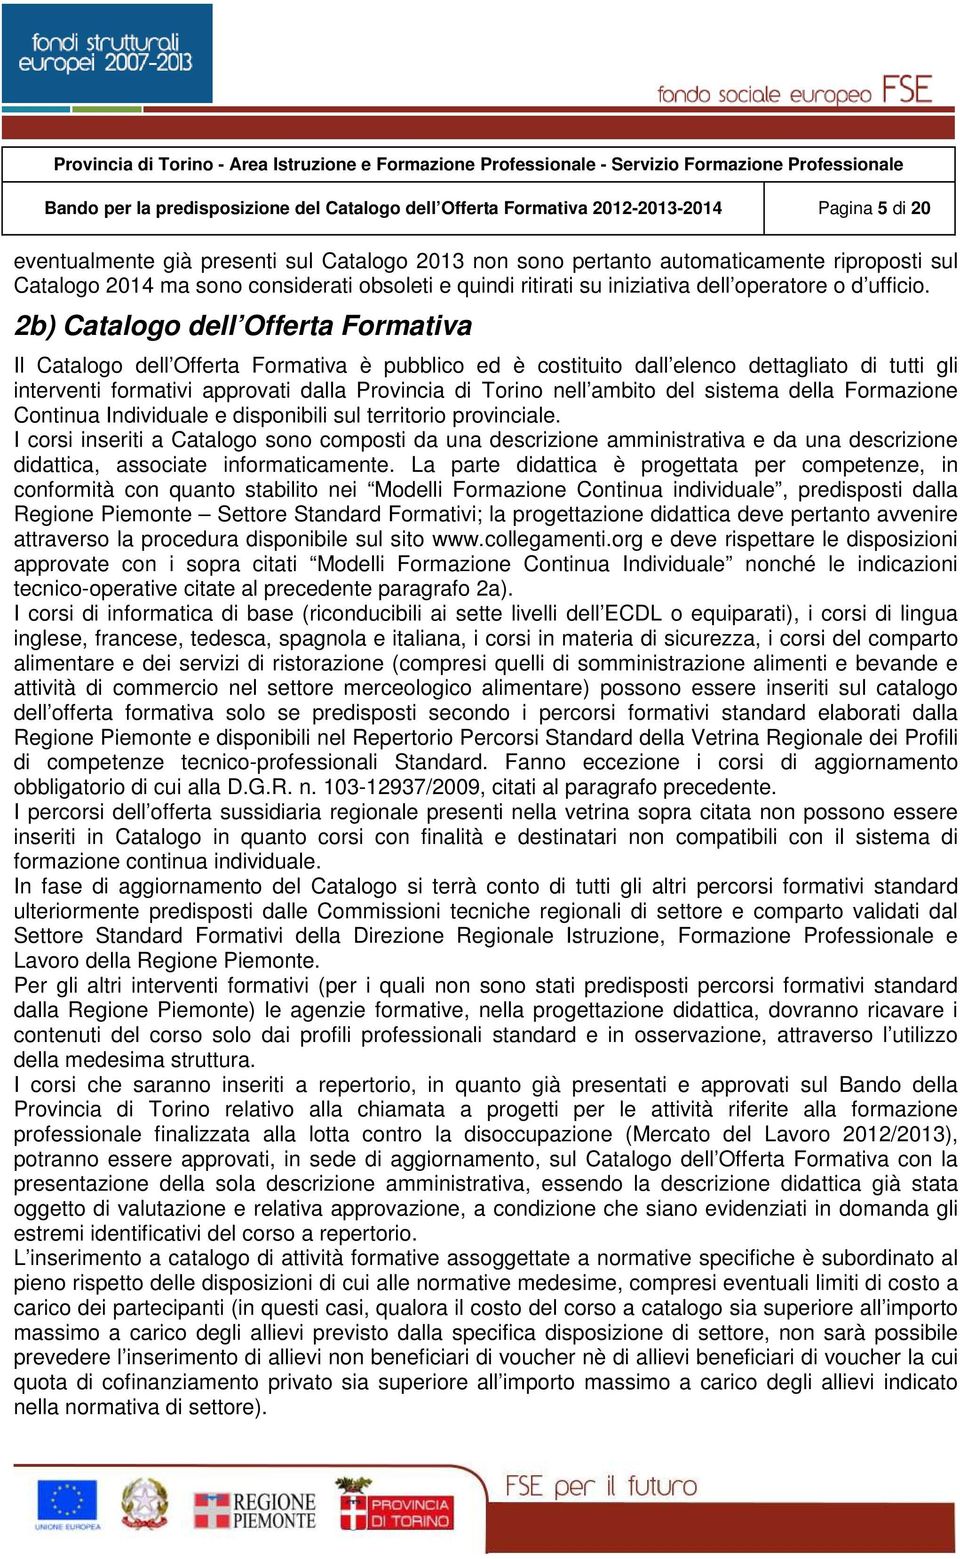 2b) Catalogo dell Offerta Formativa Il Catalogo dell Offerta Formativa è pubblico ed è costituito dall elenco dettagliato di tutti gli interventi formativi approvati dalla Provincia di Torino nell